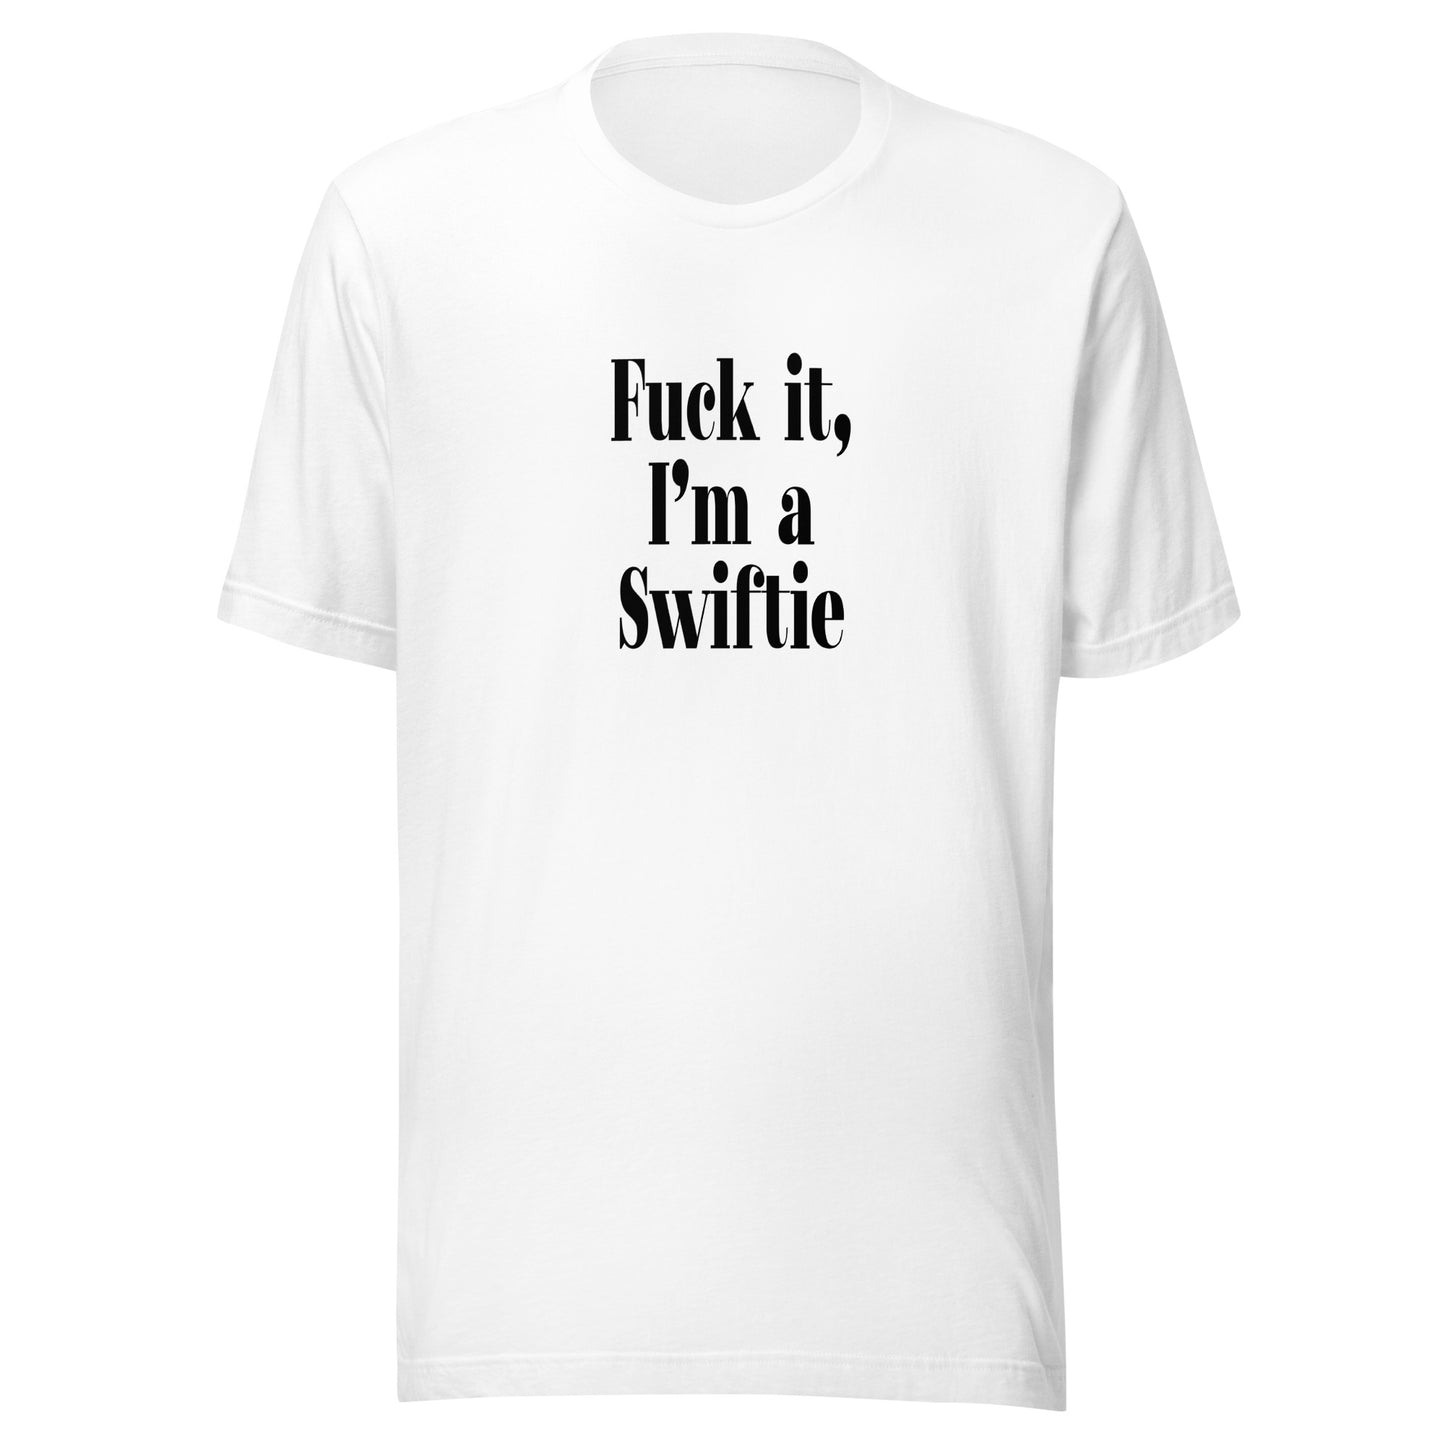 "F*ck it, I'm a Swiftie" T-Shirt